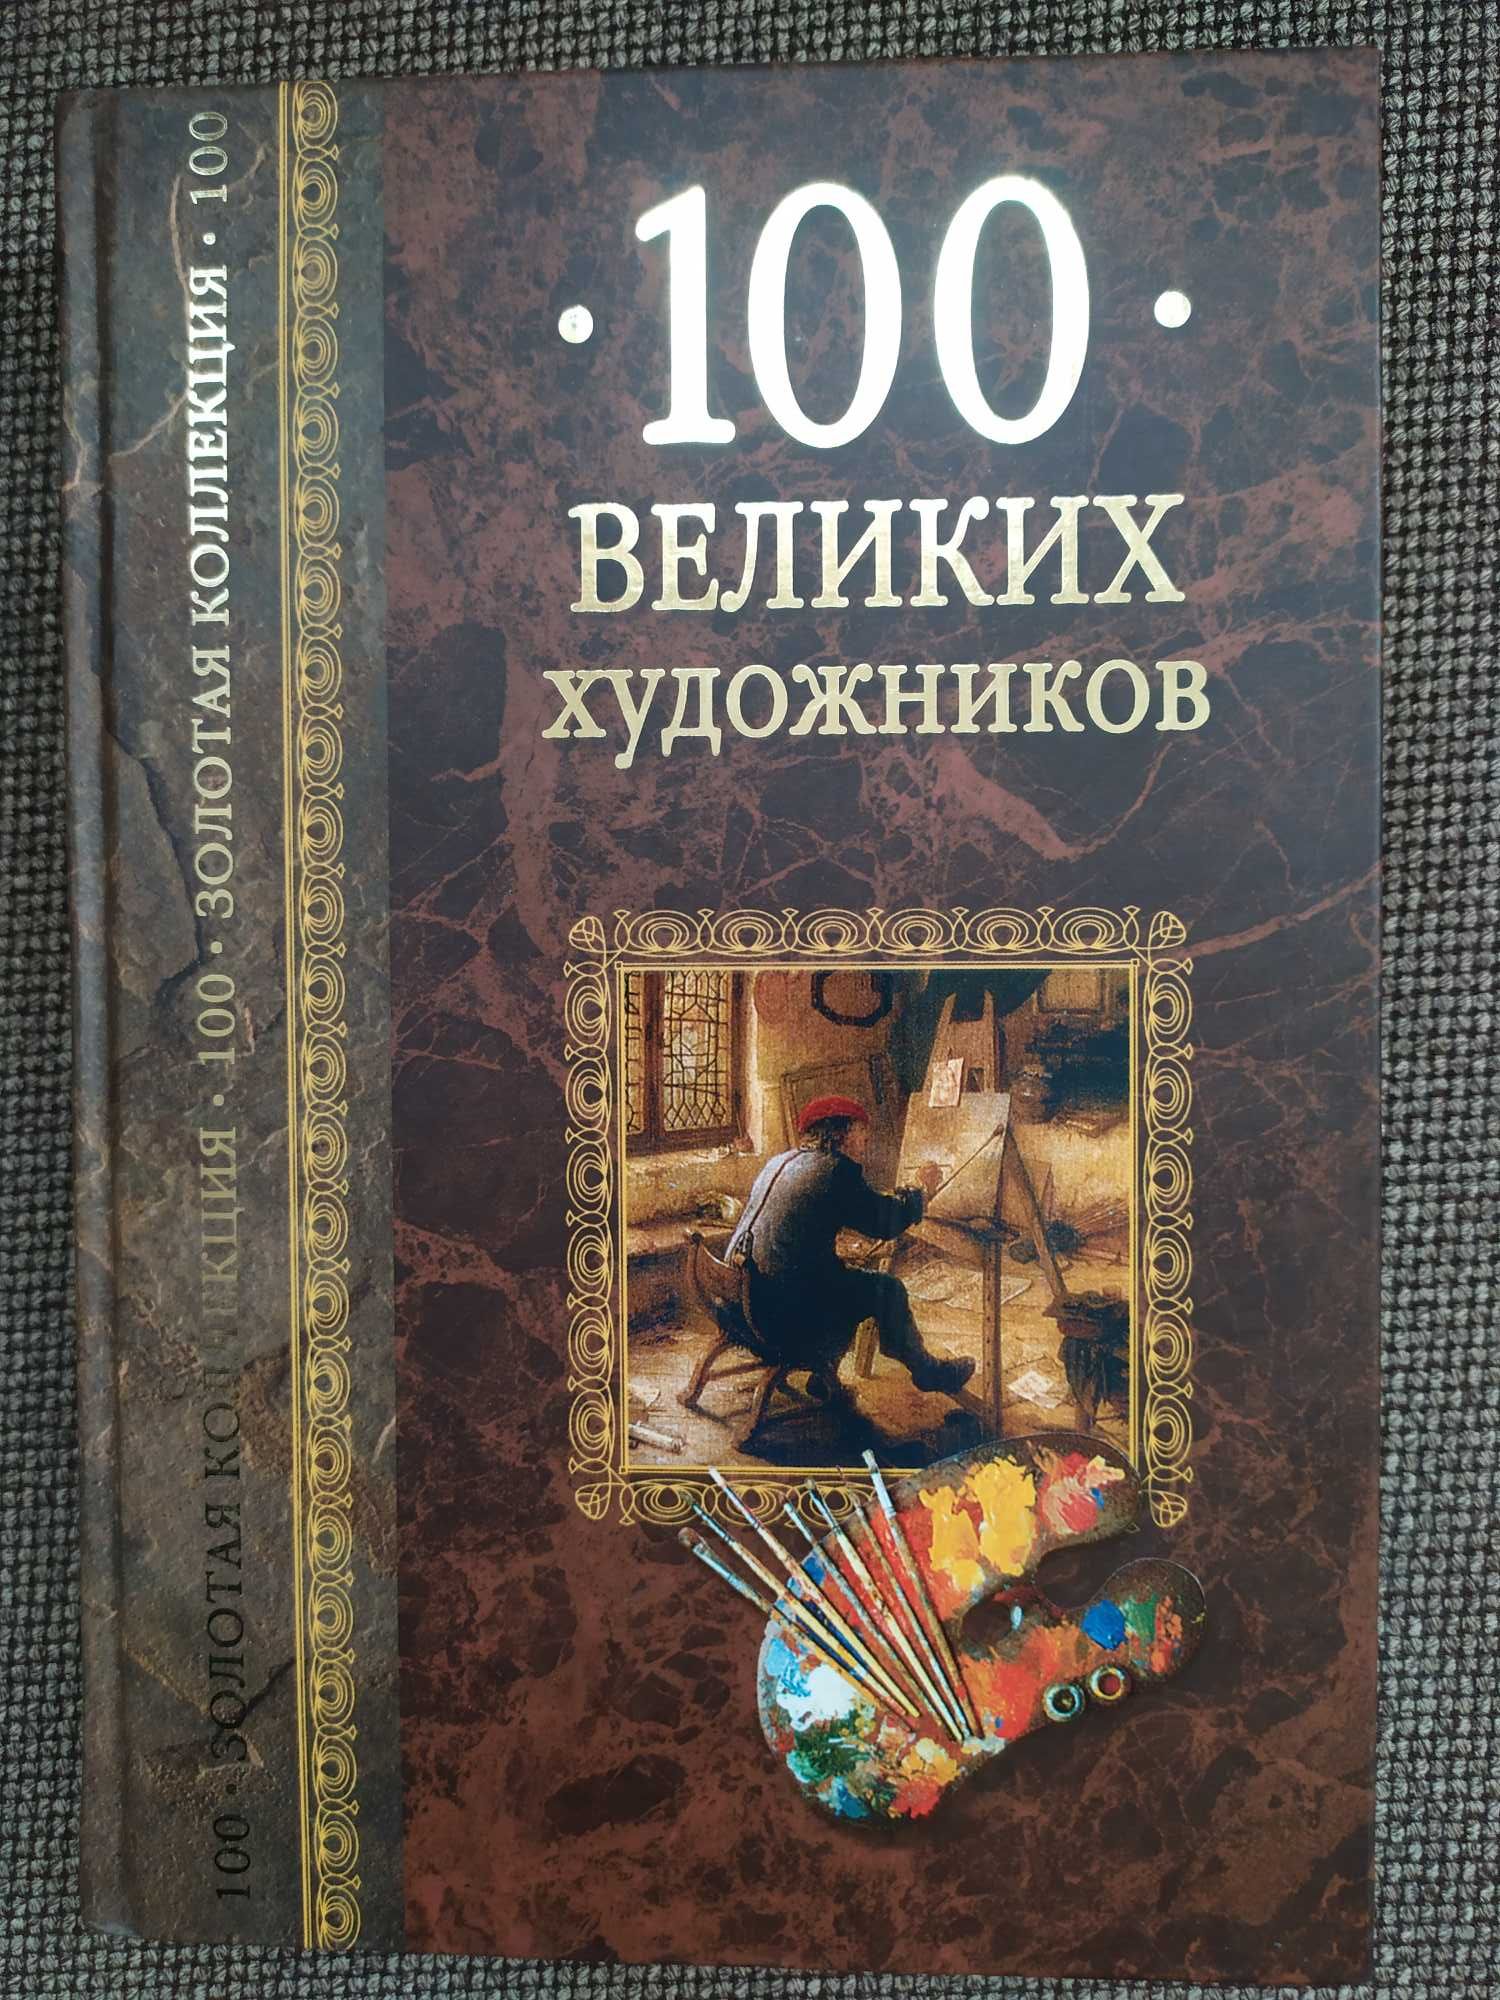 "100 великих художников"